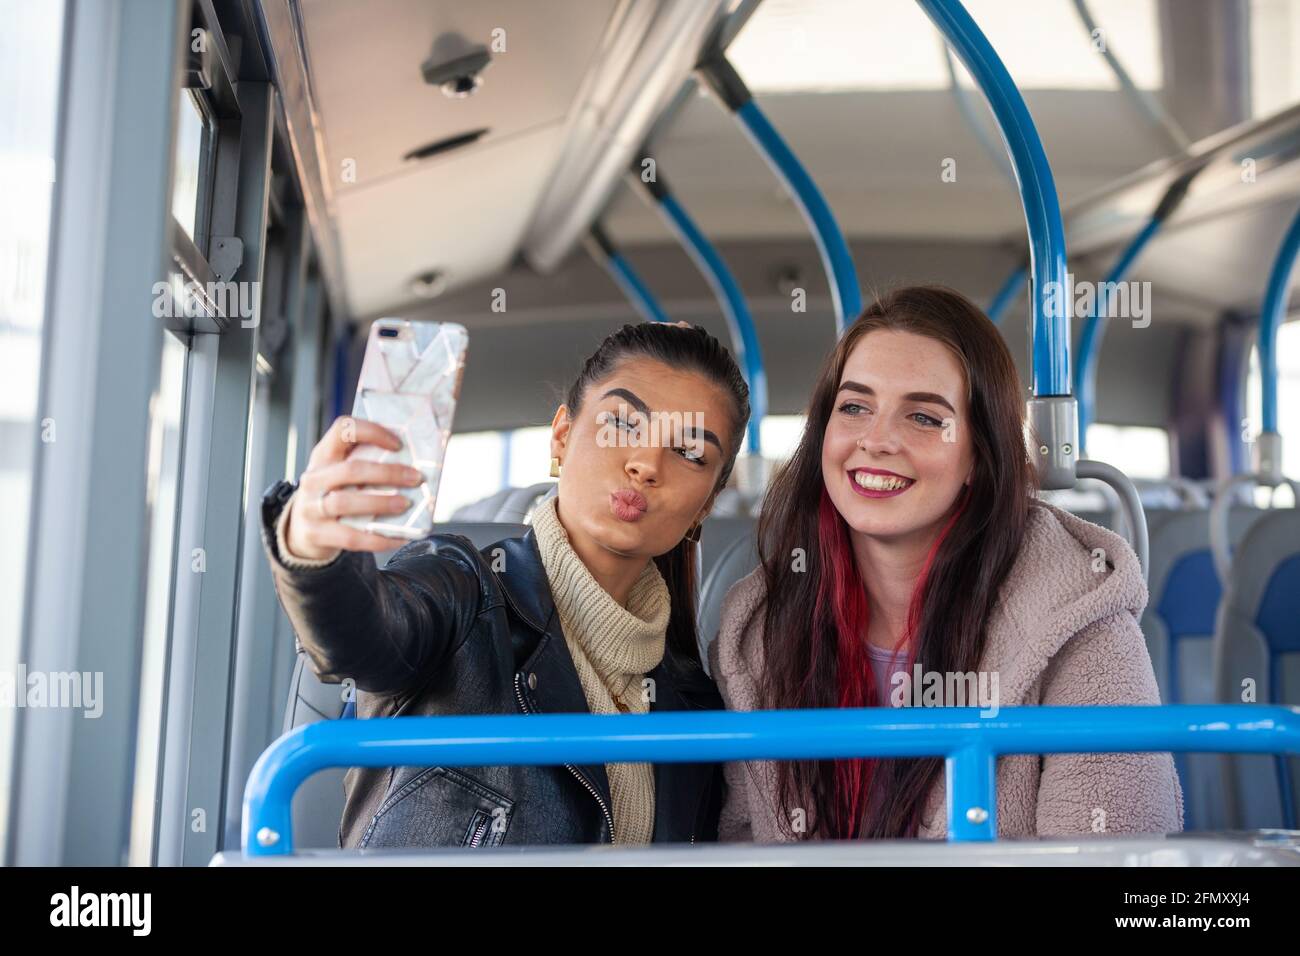 Dos mujeres jóvenes tirando de caras y tomando una selfie de ellos mismos dentro de un autobús Foto de stock